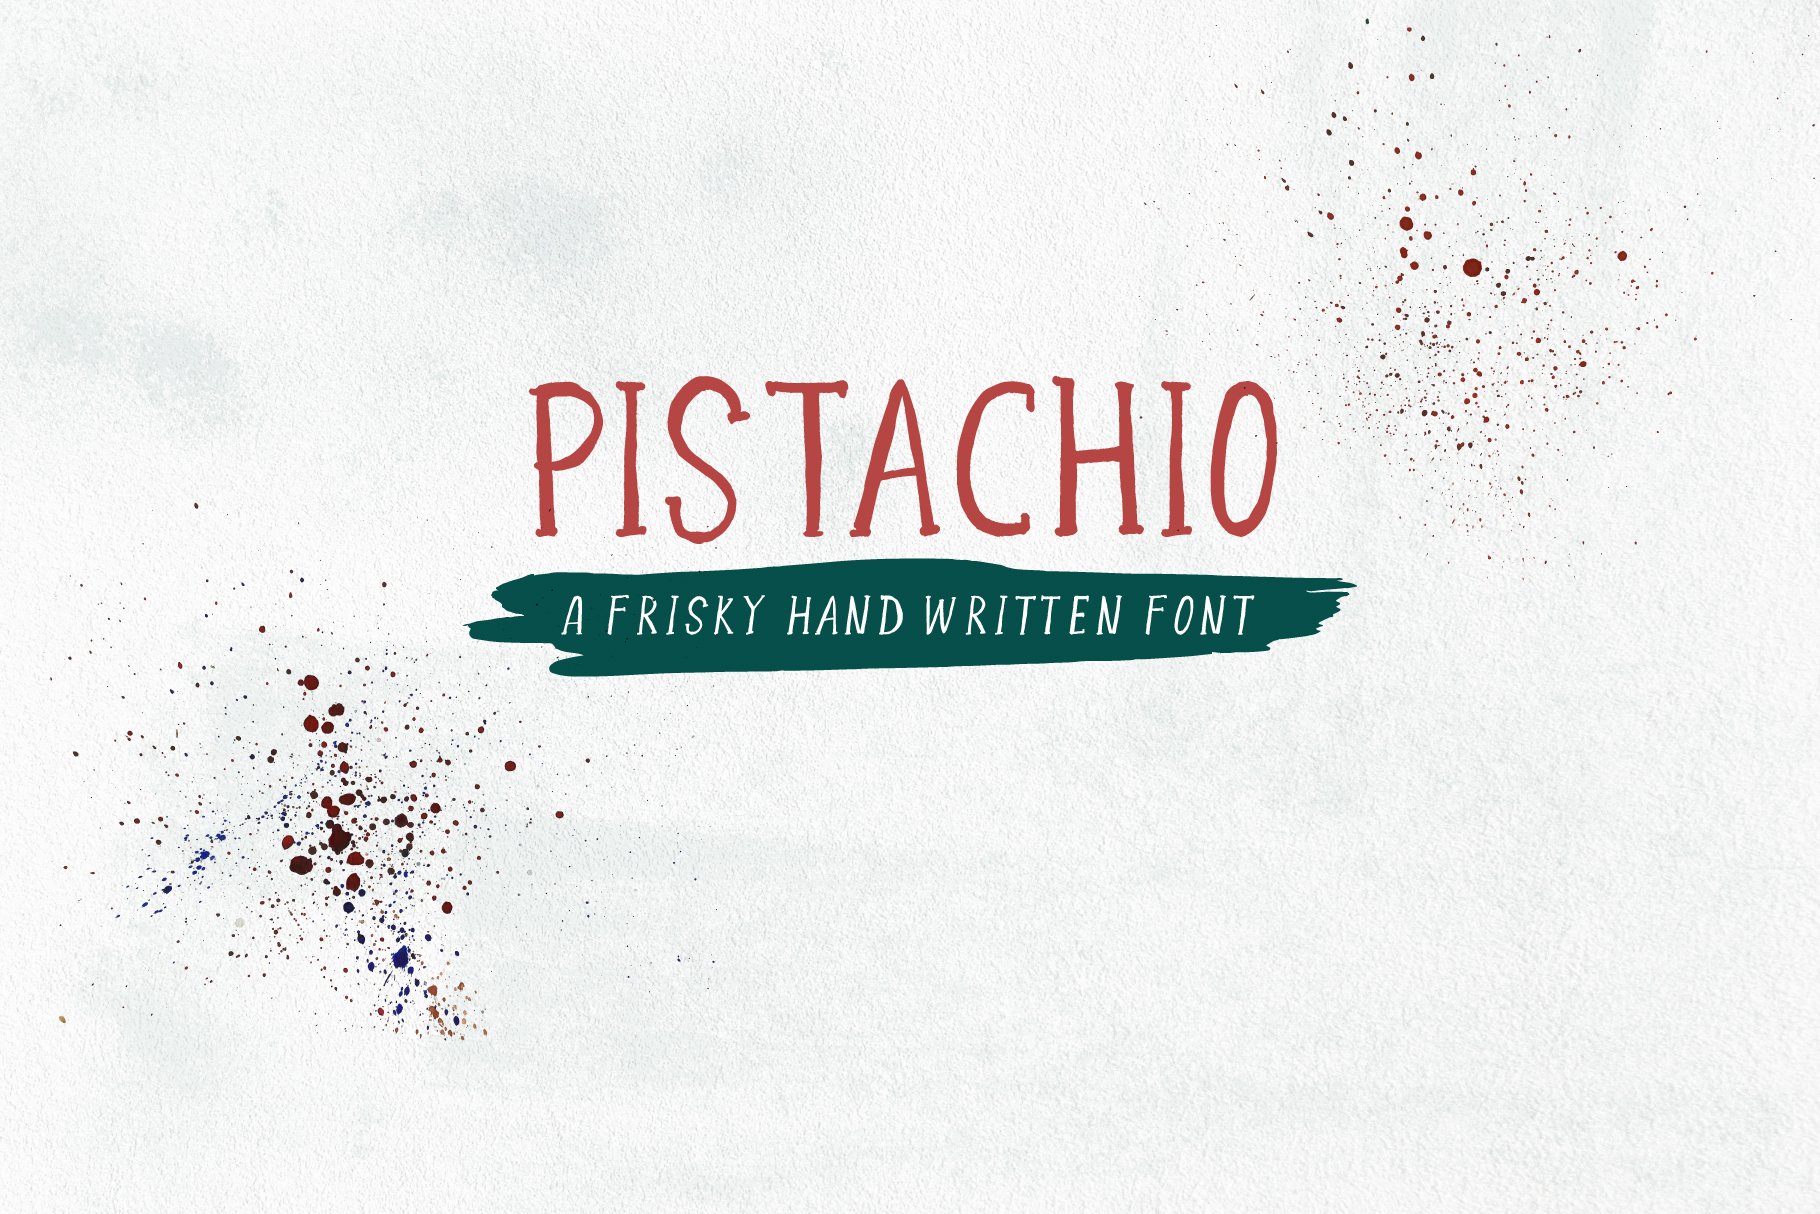 Pistachio - Frisky Handletterd Font cover image.